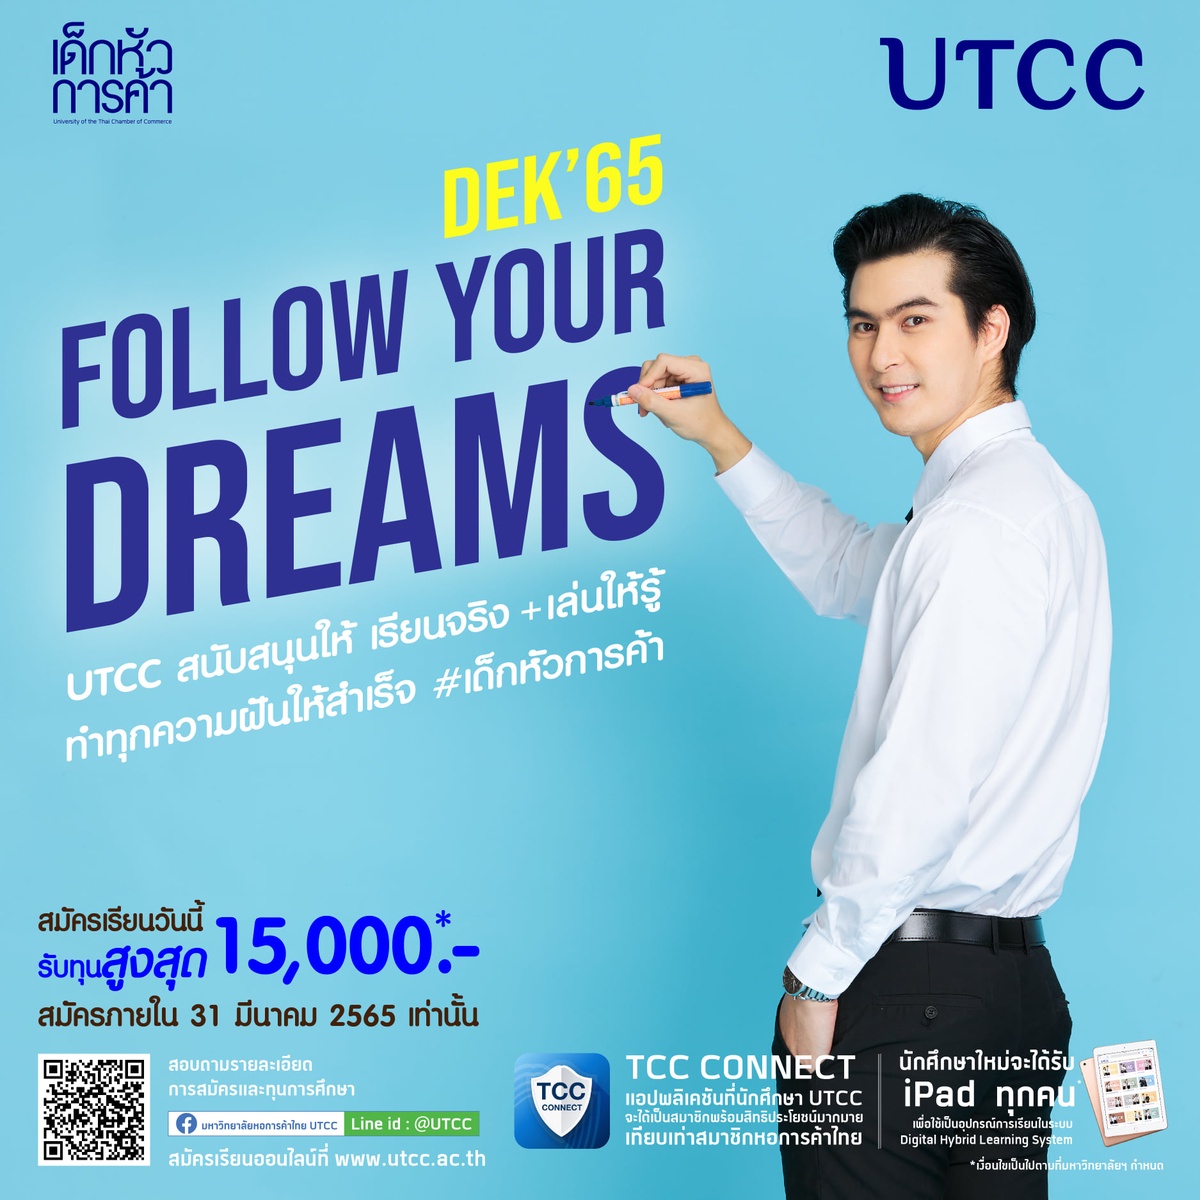 มาทำตามความฝัน Follow Your Dreams ที่ ม.หอการค้าไทย มอบทุน Start Up ส่วนลดค่าเล่าเรียน มูลค่ารวม 15,000